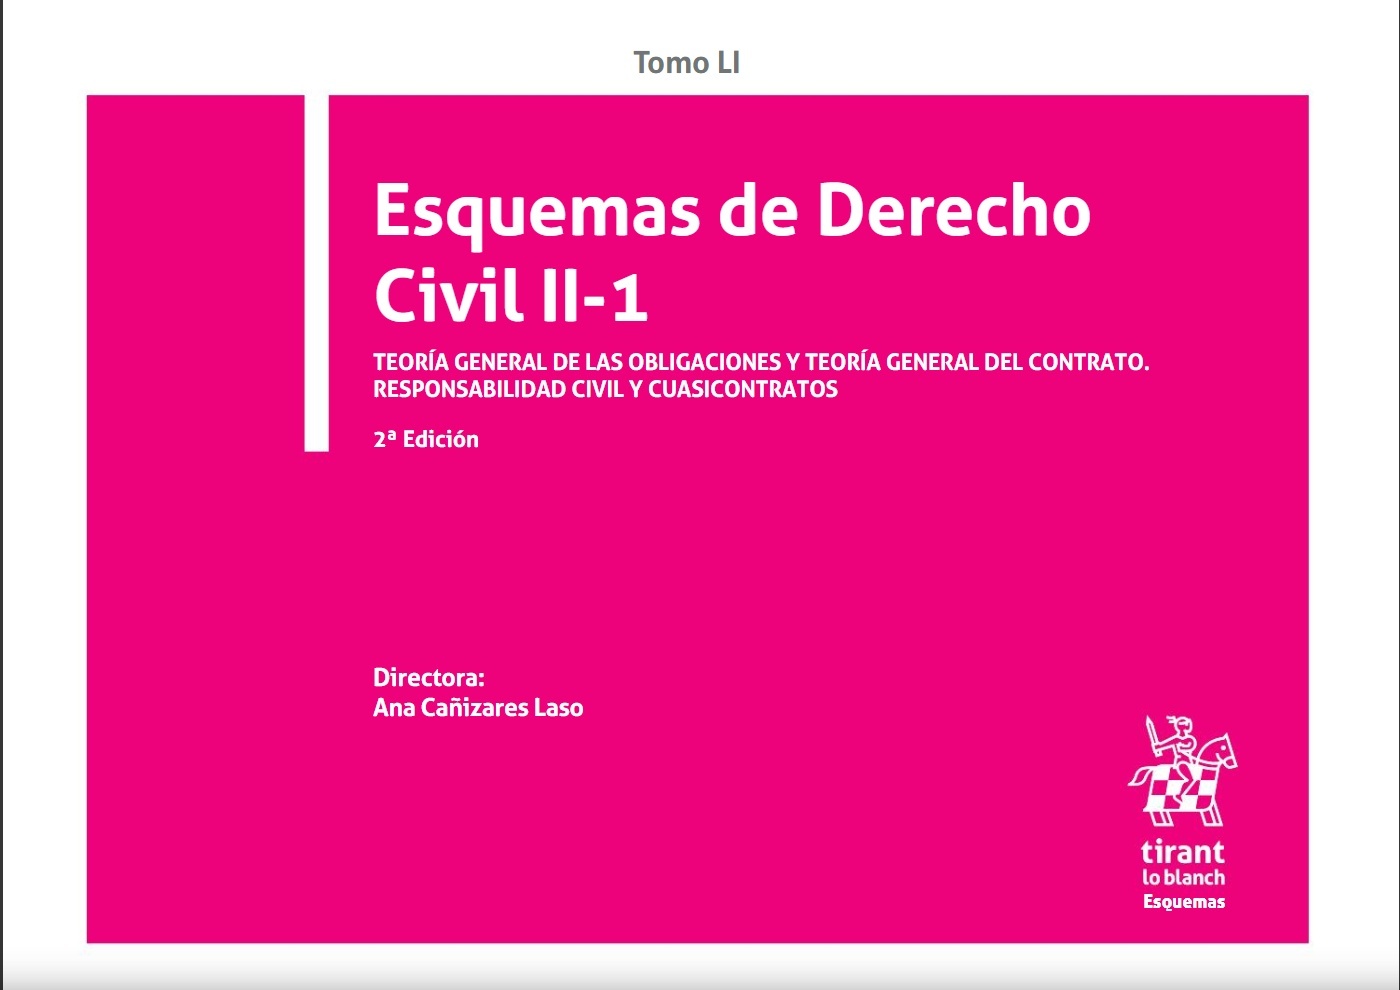 Esquemas de Derecho Civil II-1. Teoría general de las obligaciones y teoría general del contrato Tomo LI "Responsabilidad civil y cuasicontratos"